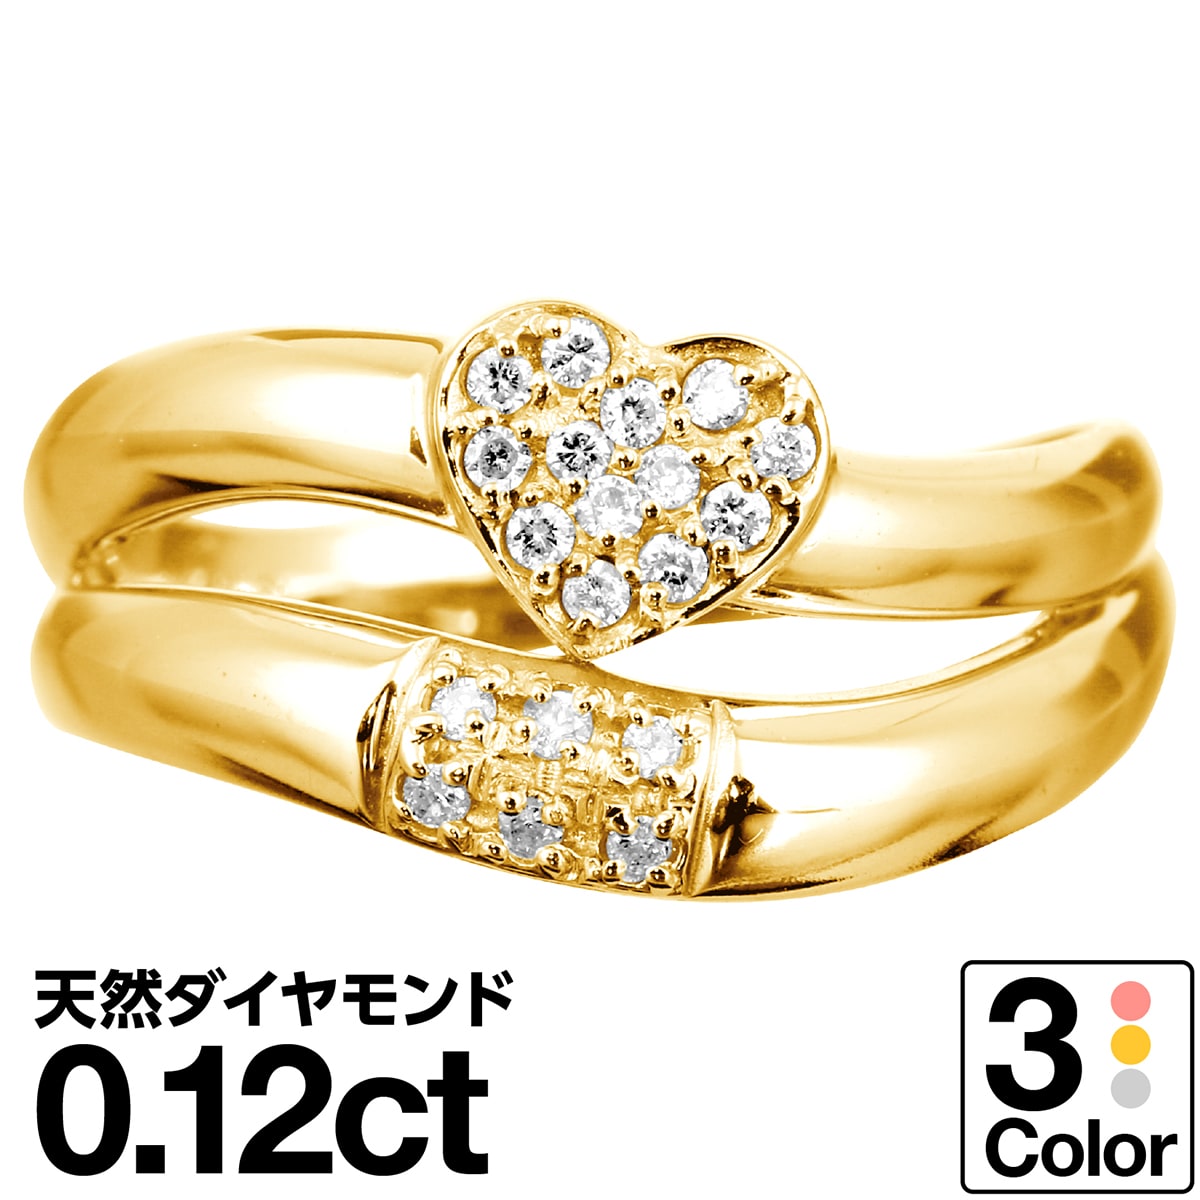 ハート ダイヤモンド リング K10 イエローゴールド ホワイトゴールド ピンクゴールド ファッションリング 品質保証書 日本製 誕生日 ギフト 金属アレルギー 指輪 リング